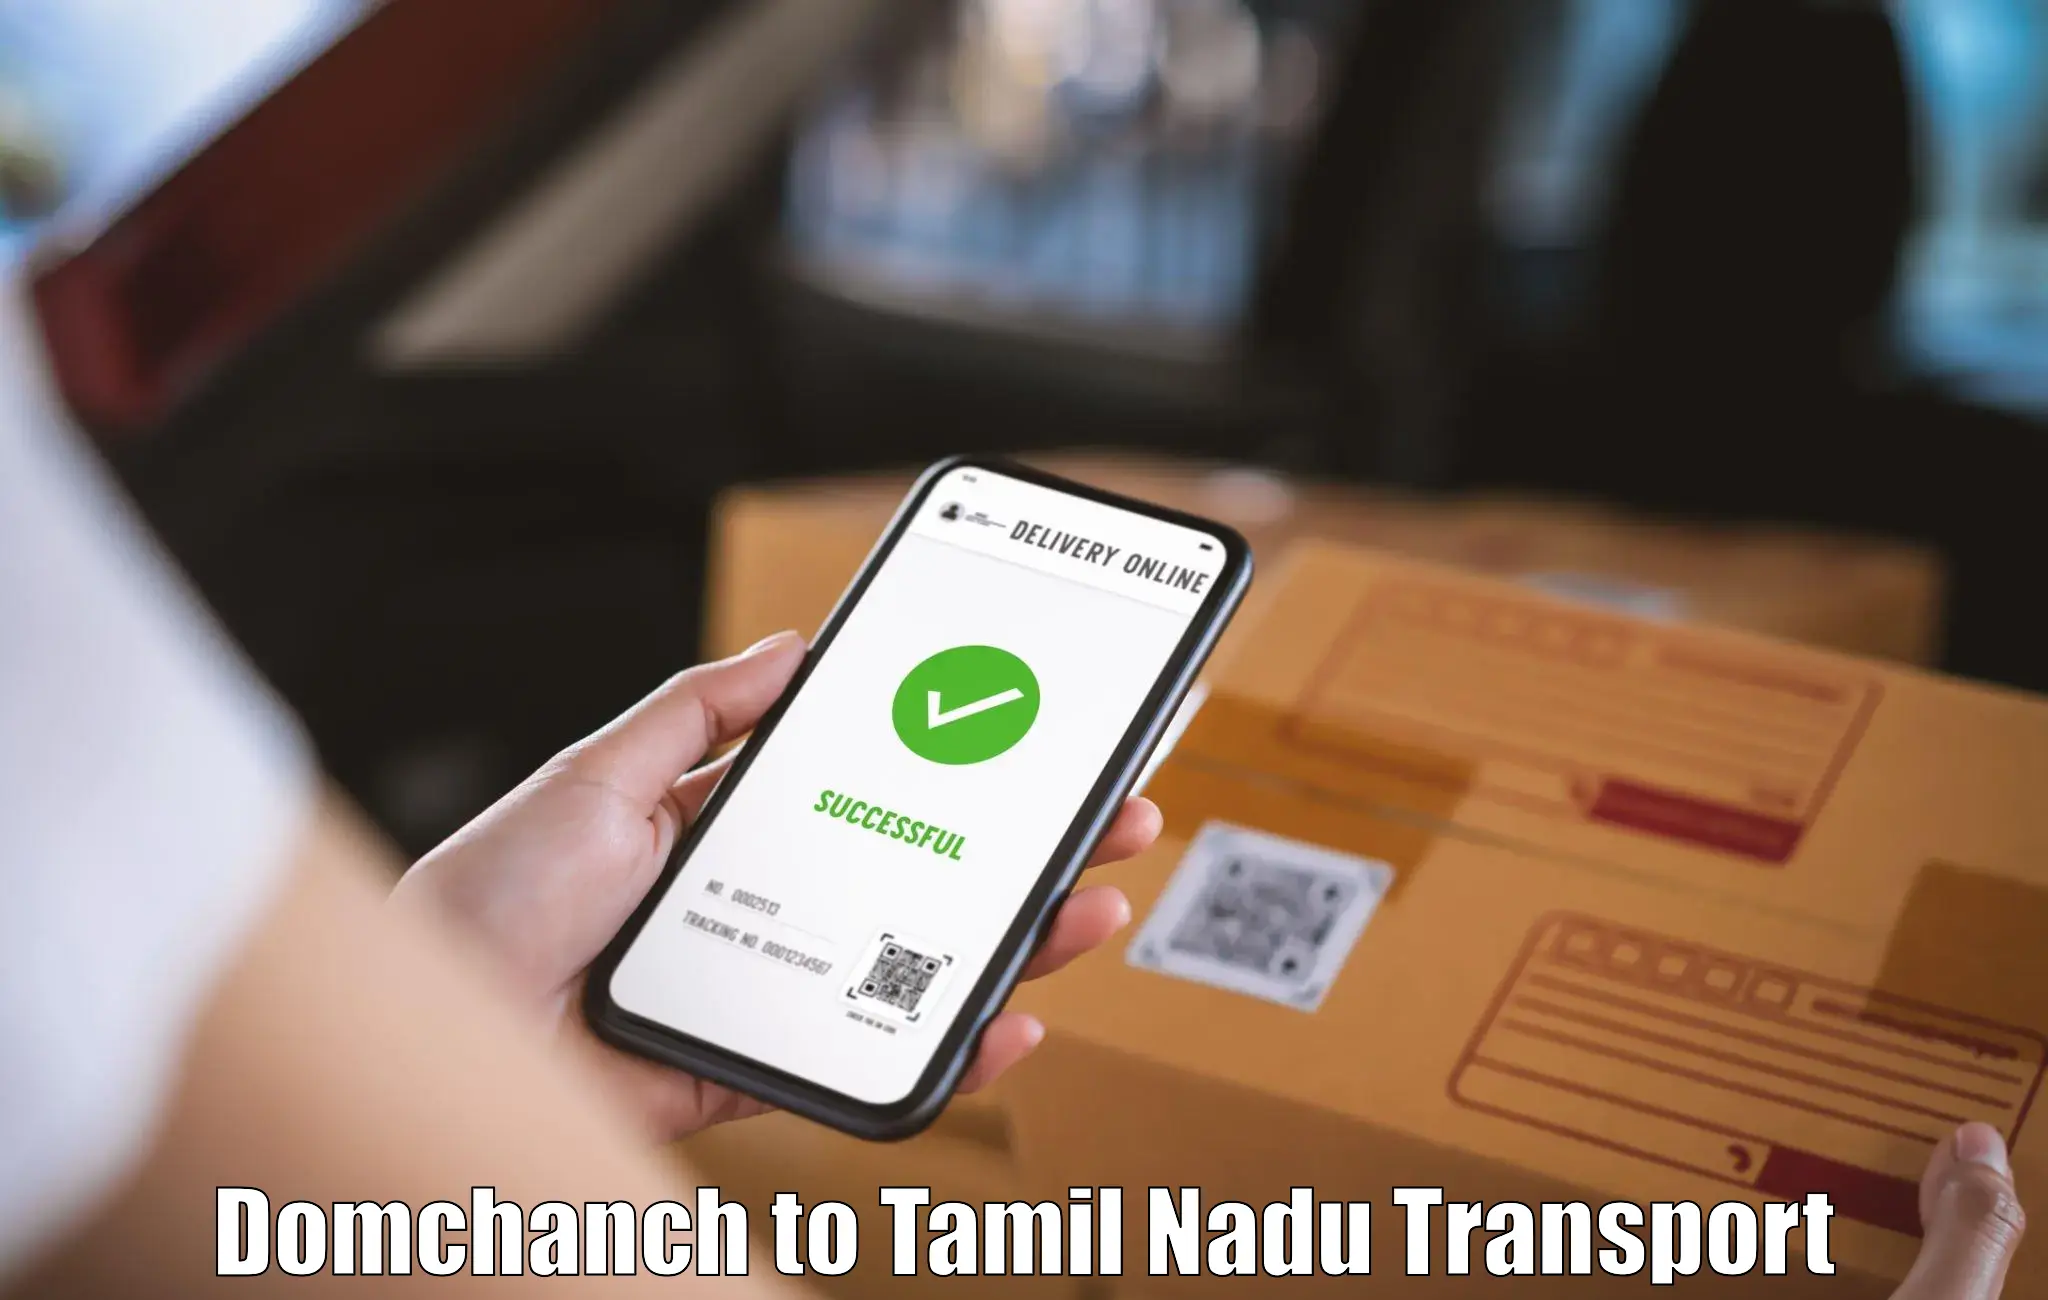 Cargo train transport services Domchanch to Tamil Nadu